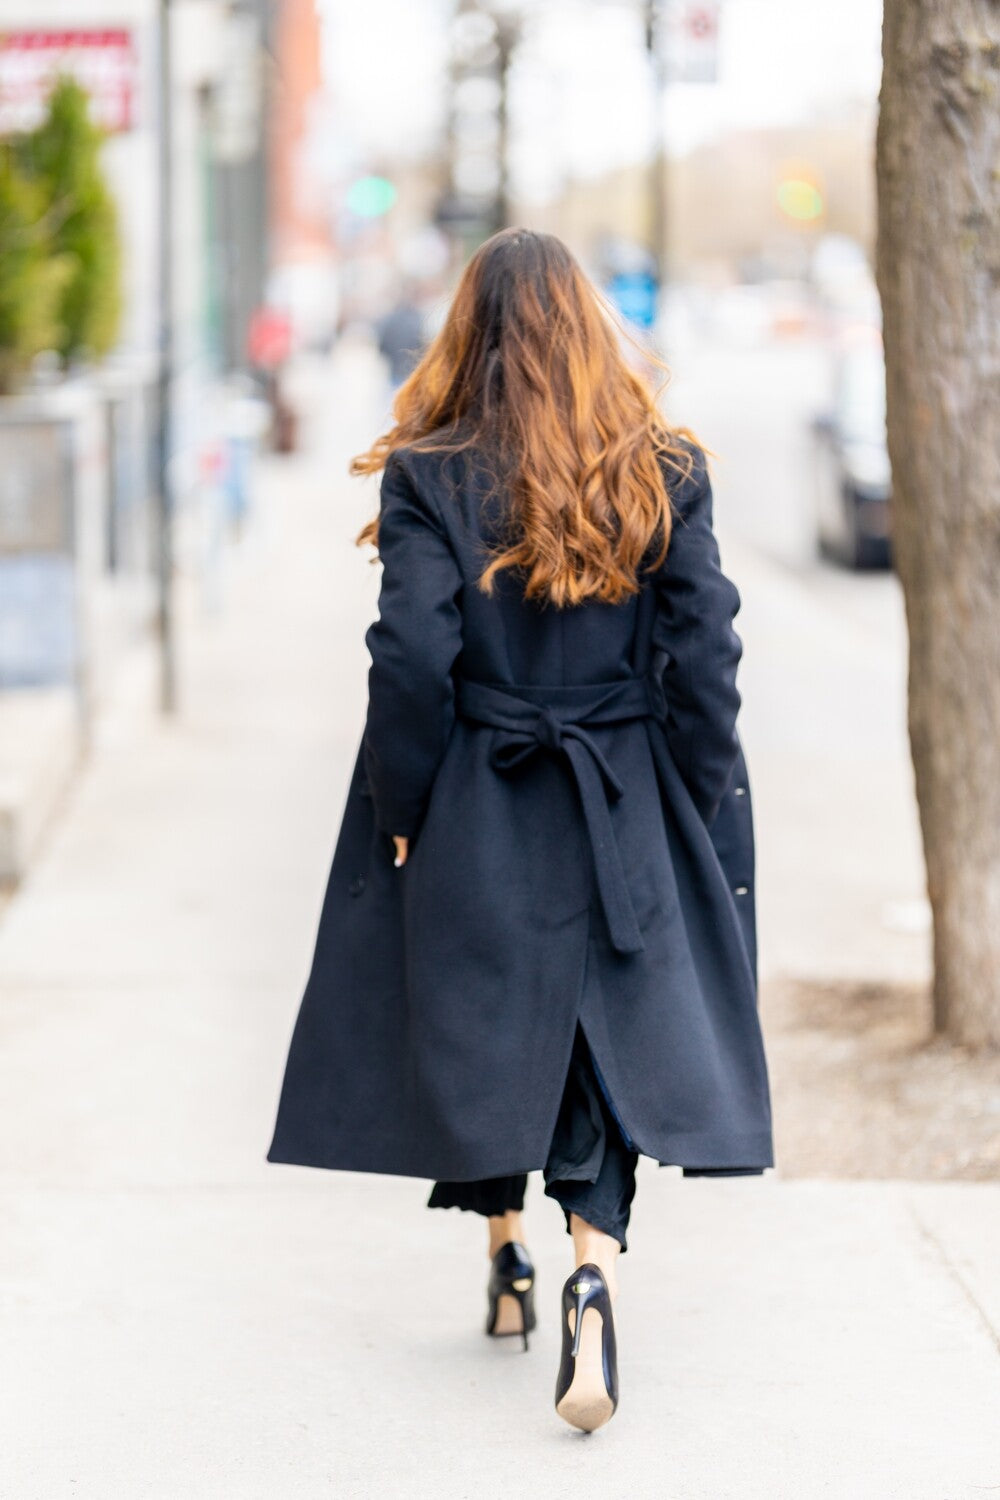 Desloups manteau d'hiver long femme avec ceinture en 100% laine et doublé